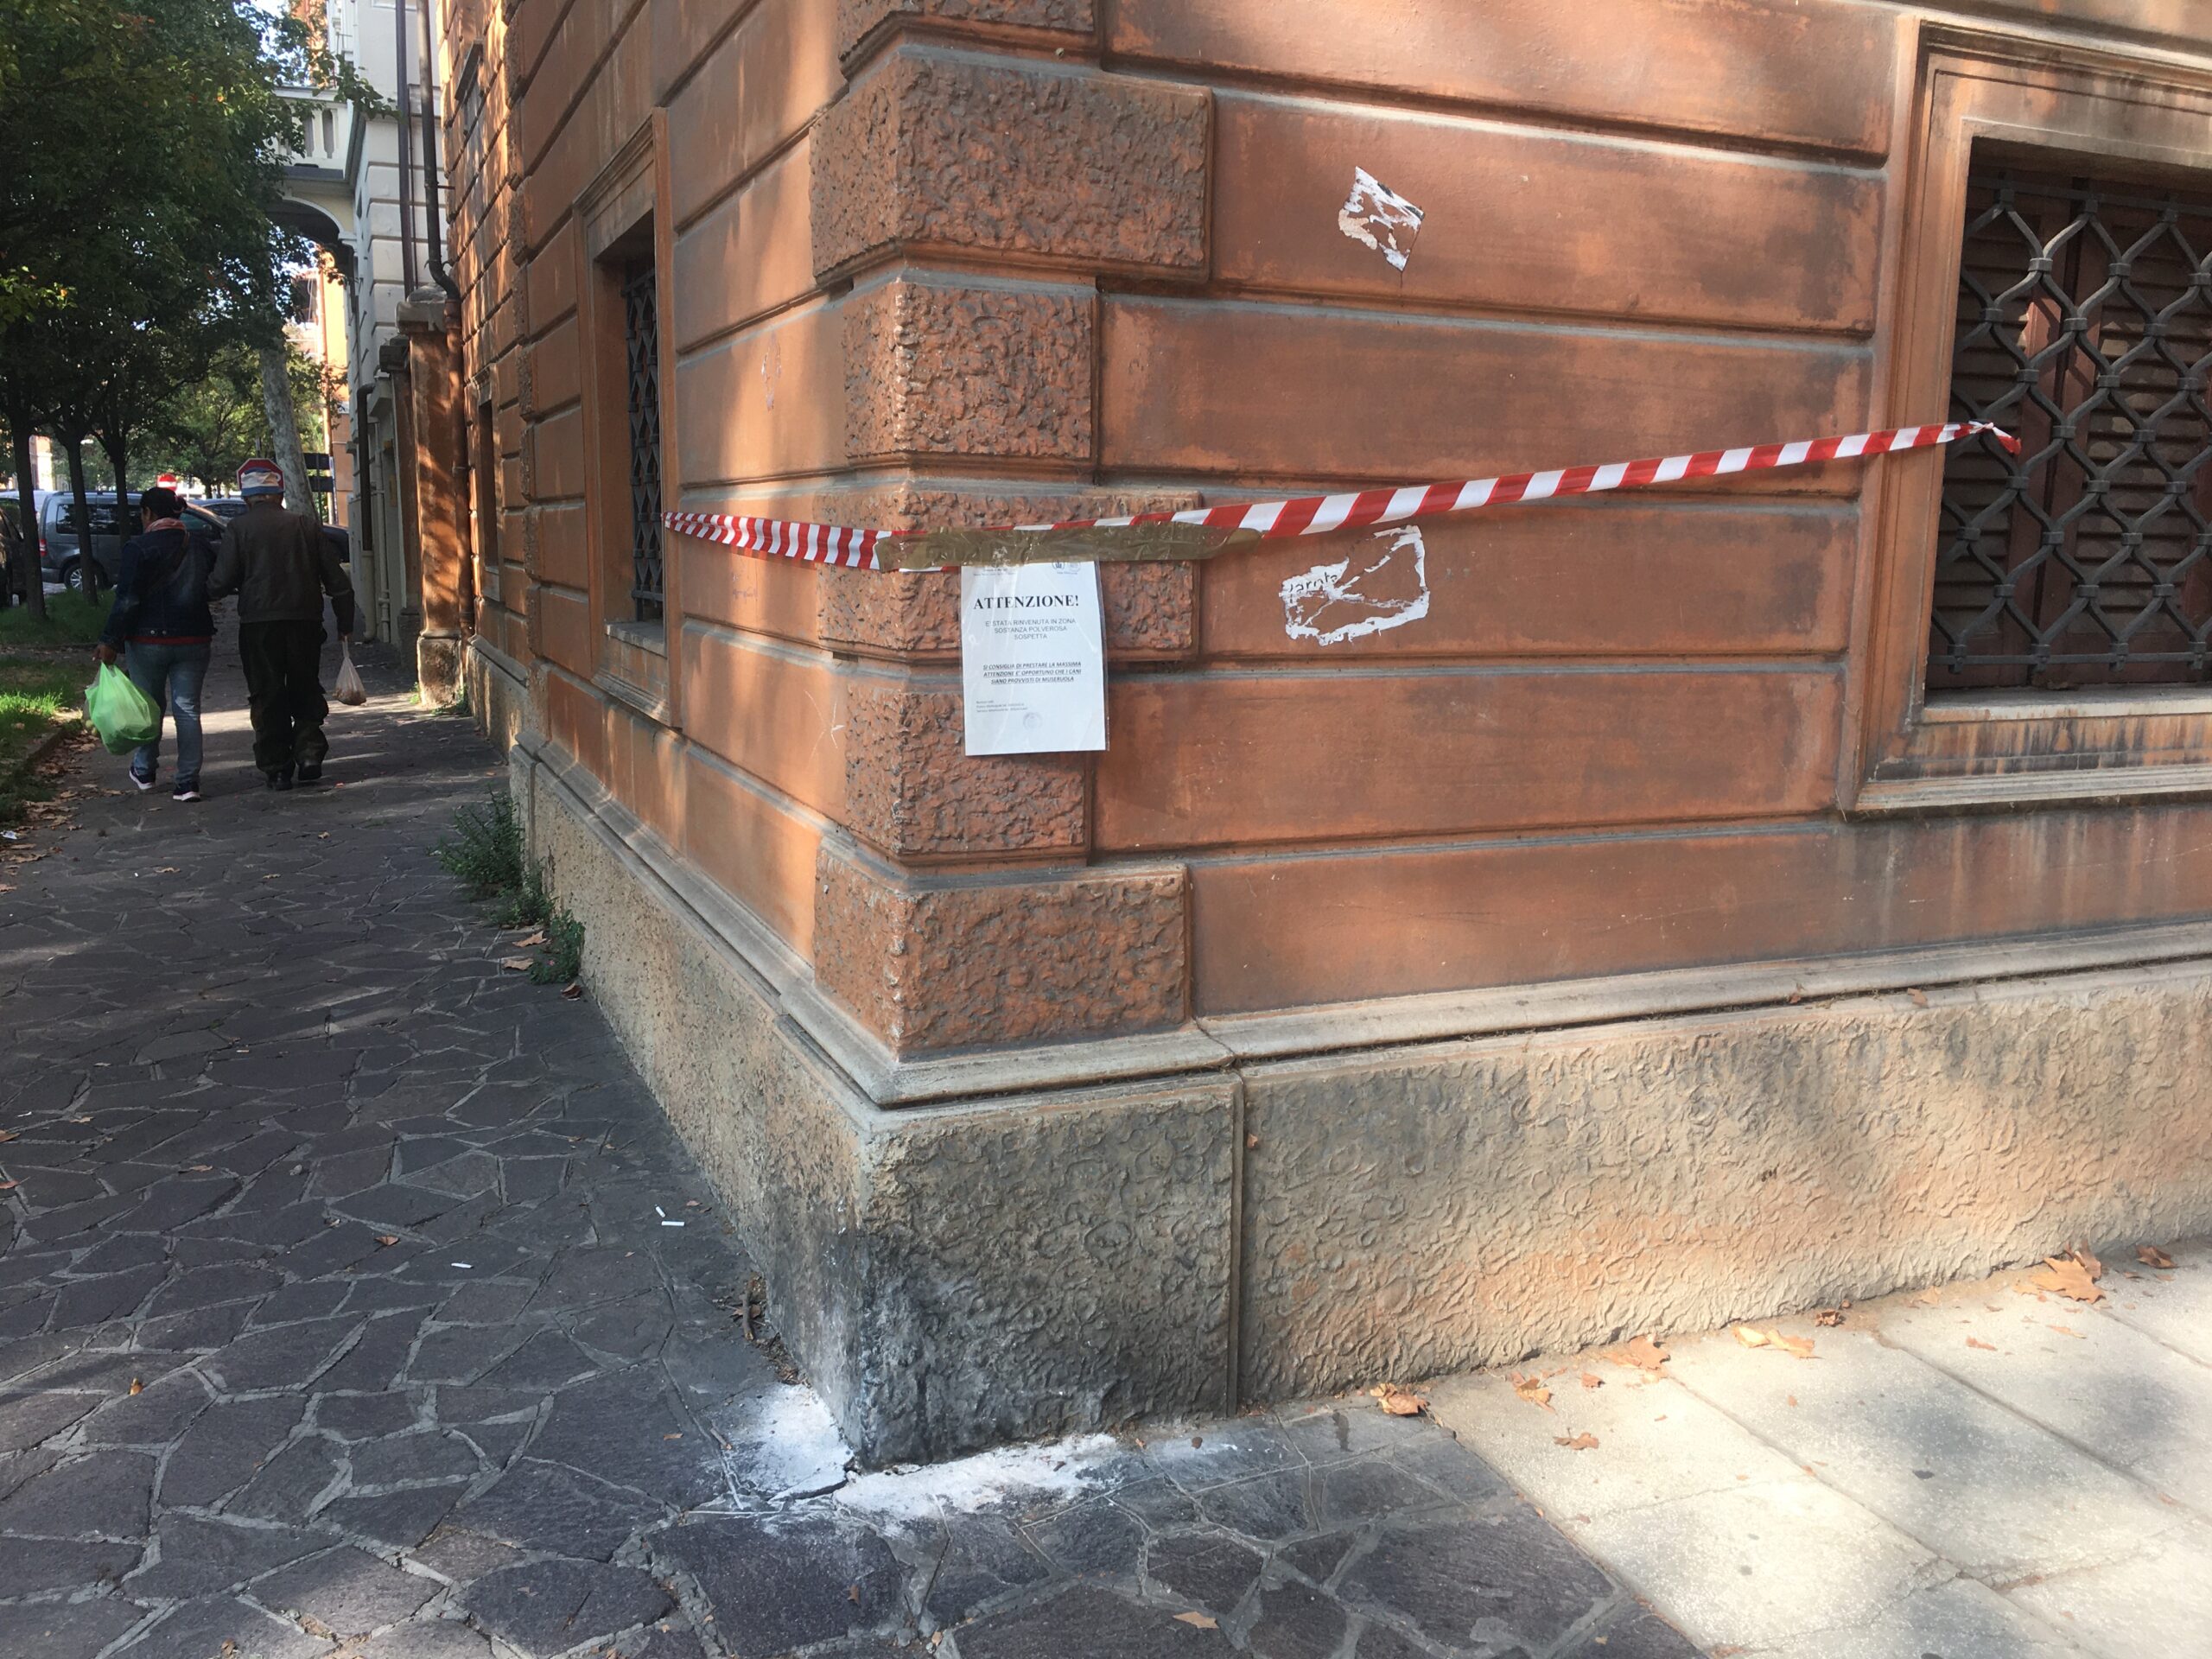  Analisi su polvere sospetta trovata in Viale Vittorio Veneto